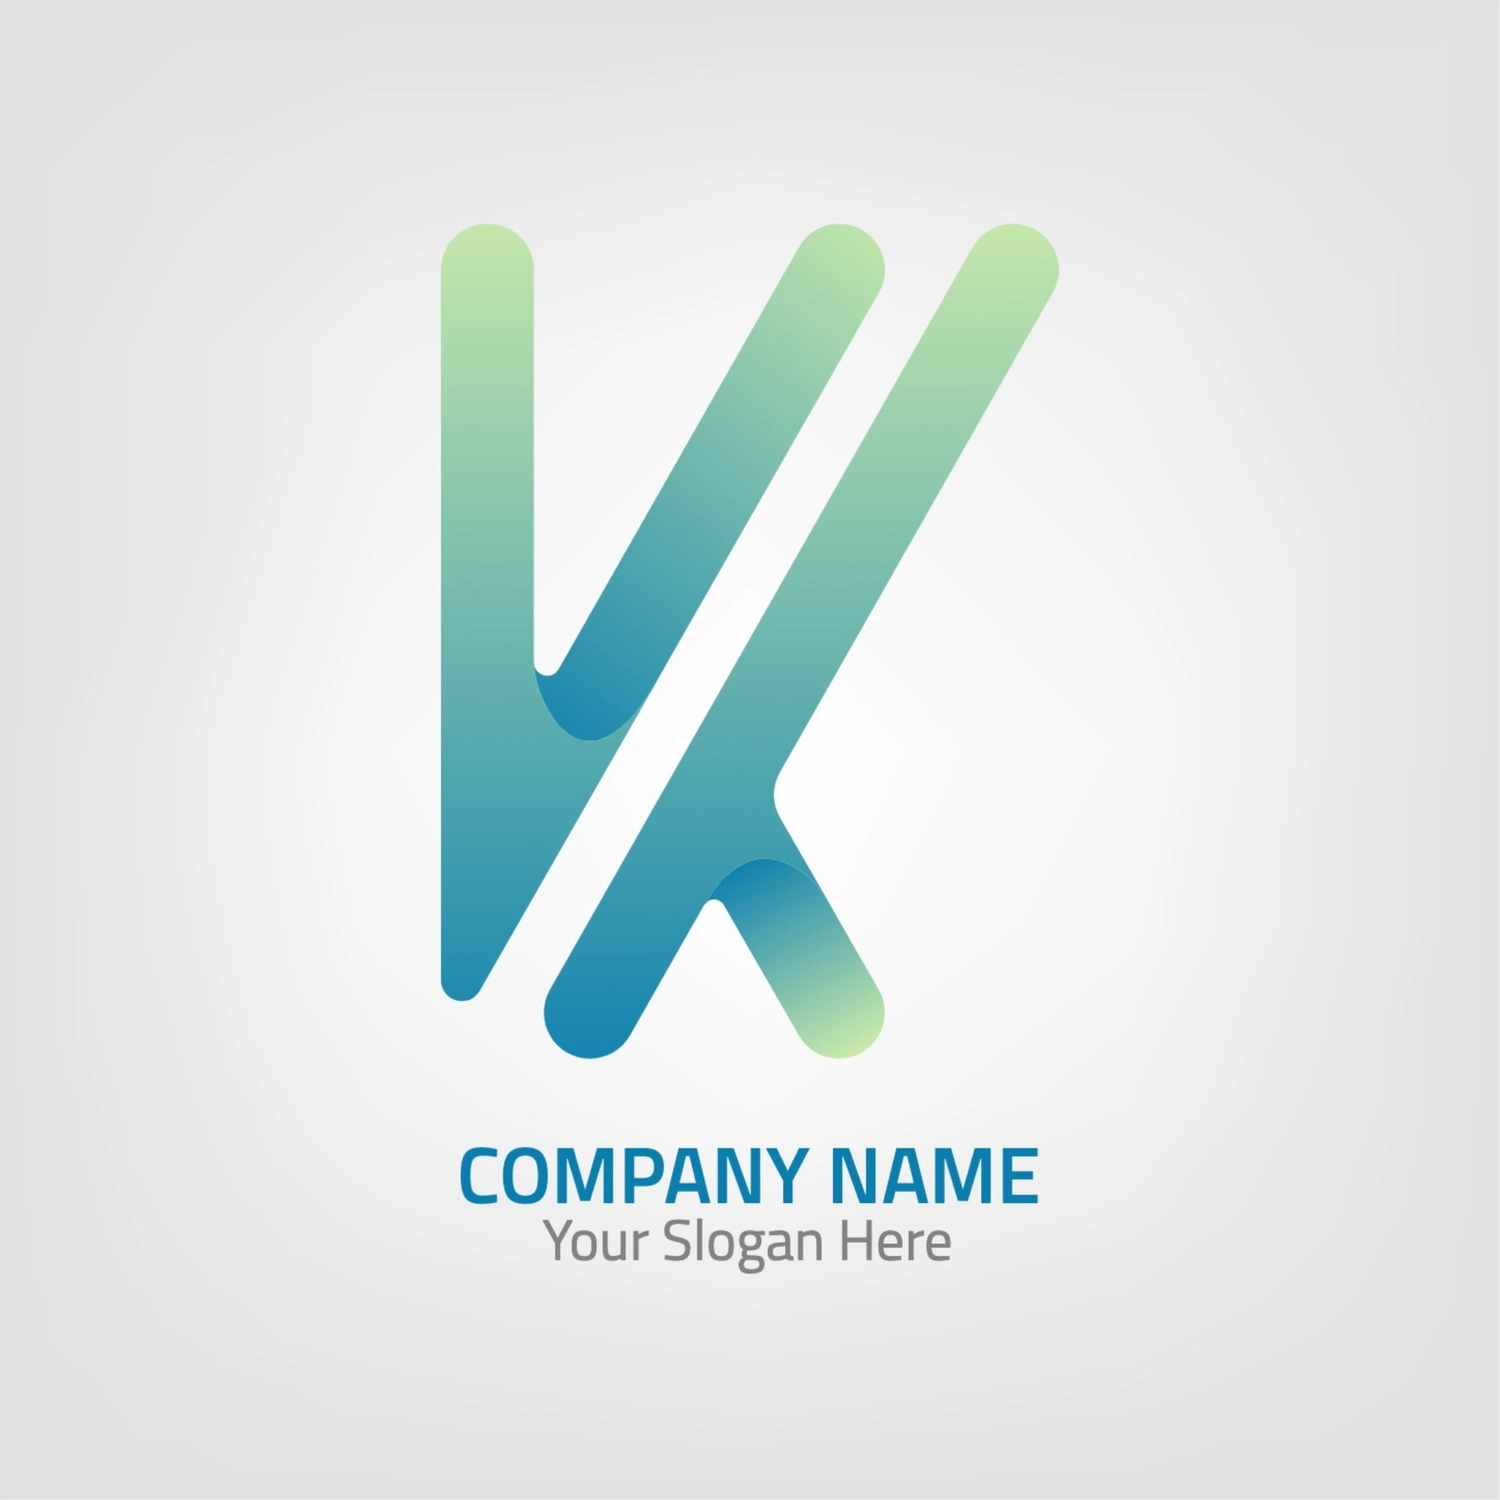 Kのロゴ, グラデーション, 作成, デザイン, ロゴテンプレート